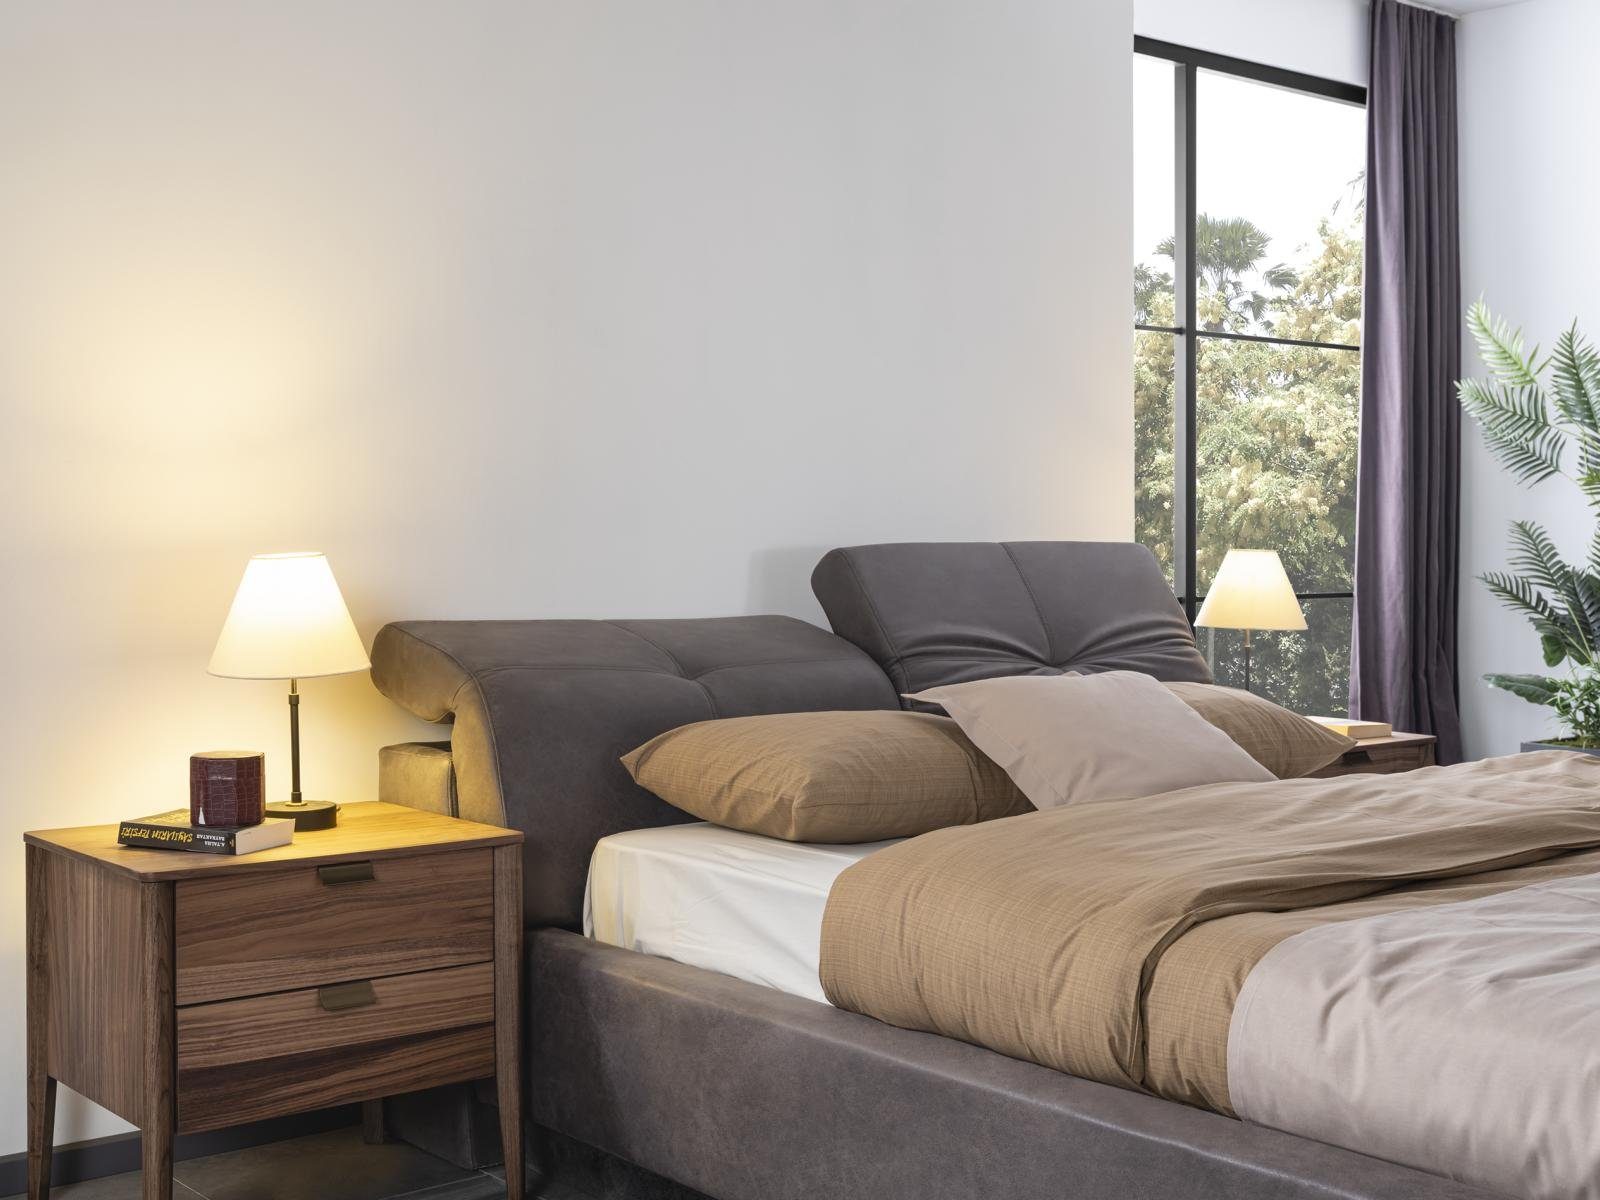 Schlafzimmer JVmoebel Bett Bett, Möbel Design Holz Betten Doppelbett Polster Material